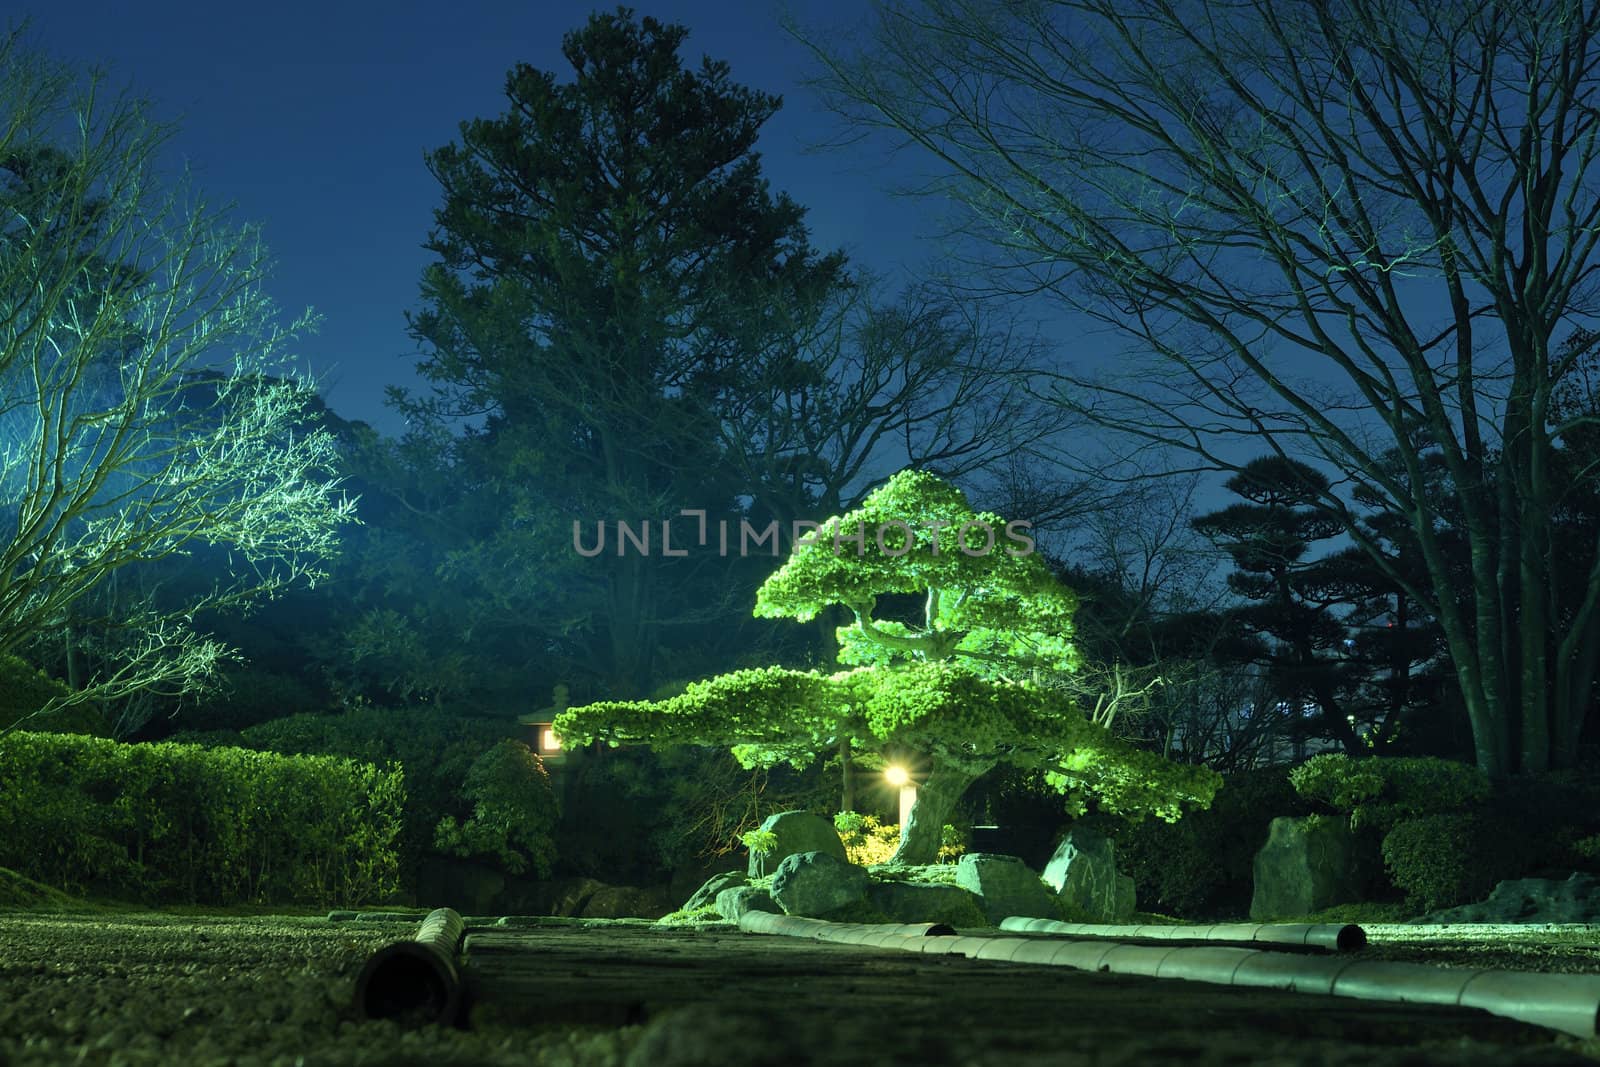 pine tree inside Japanese zen garden with scenic night illumination